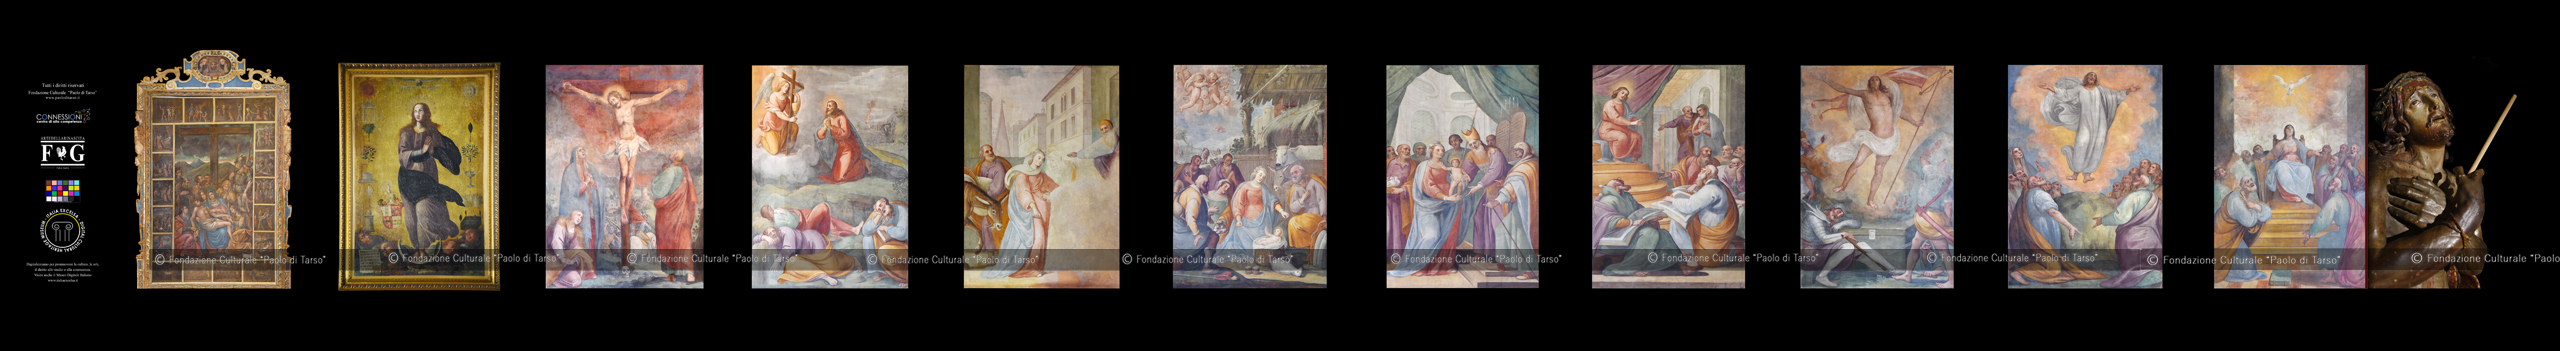 Metaverso Cosenza - Musei Digitali Complesso Monastico delle Cappuccinelle